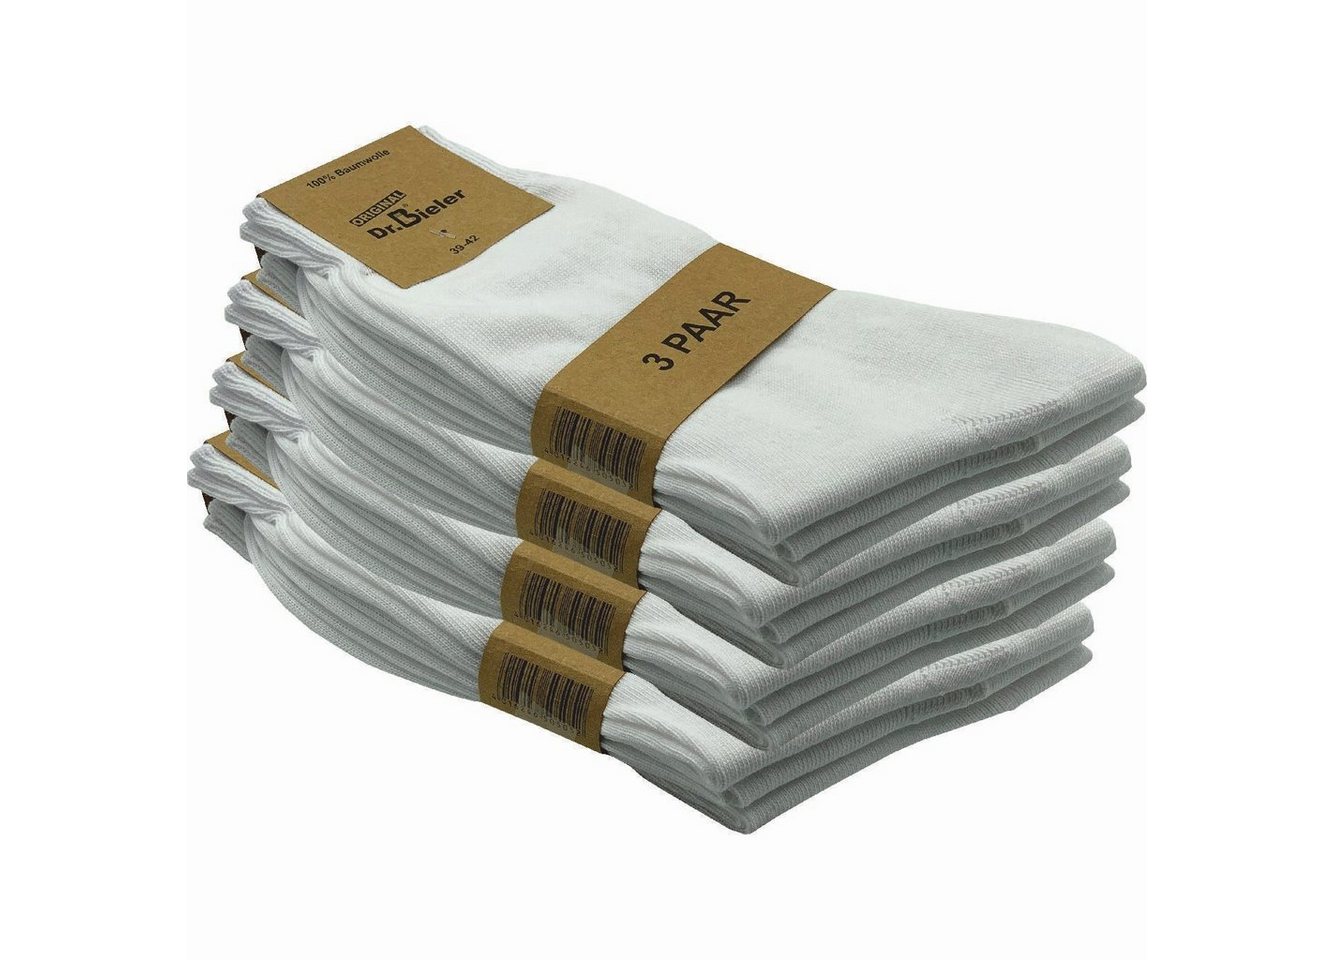 GAWILO Basicsocken für Herren aus 100% Baumwolle - ohne Gummi - ohne drückende Naht (12 Paar) in schwarz, weiß & blau - für Preisbewusste in ansprechender Qualität von GAWILO